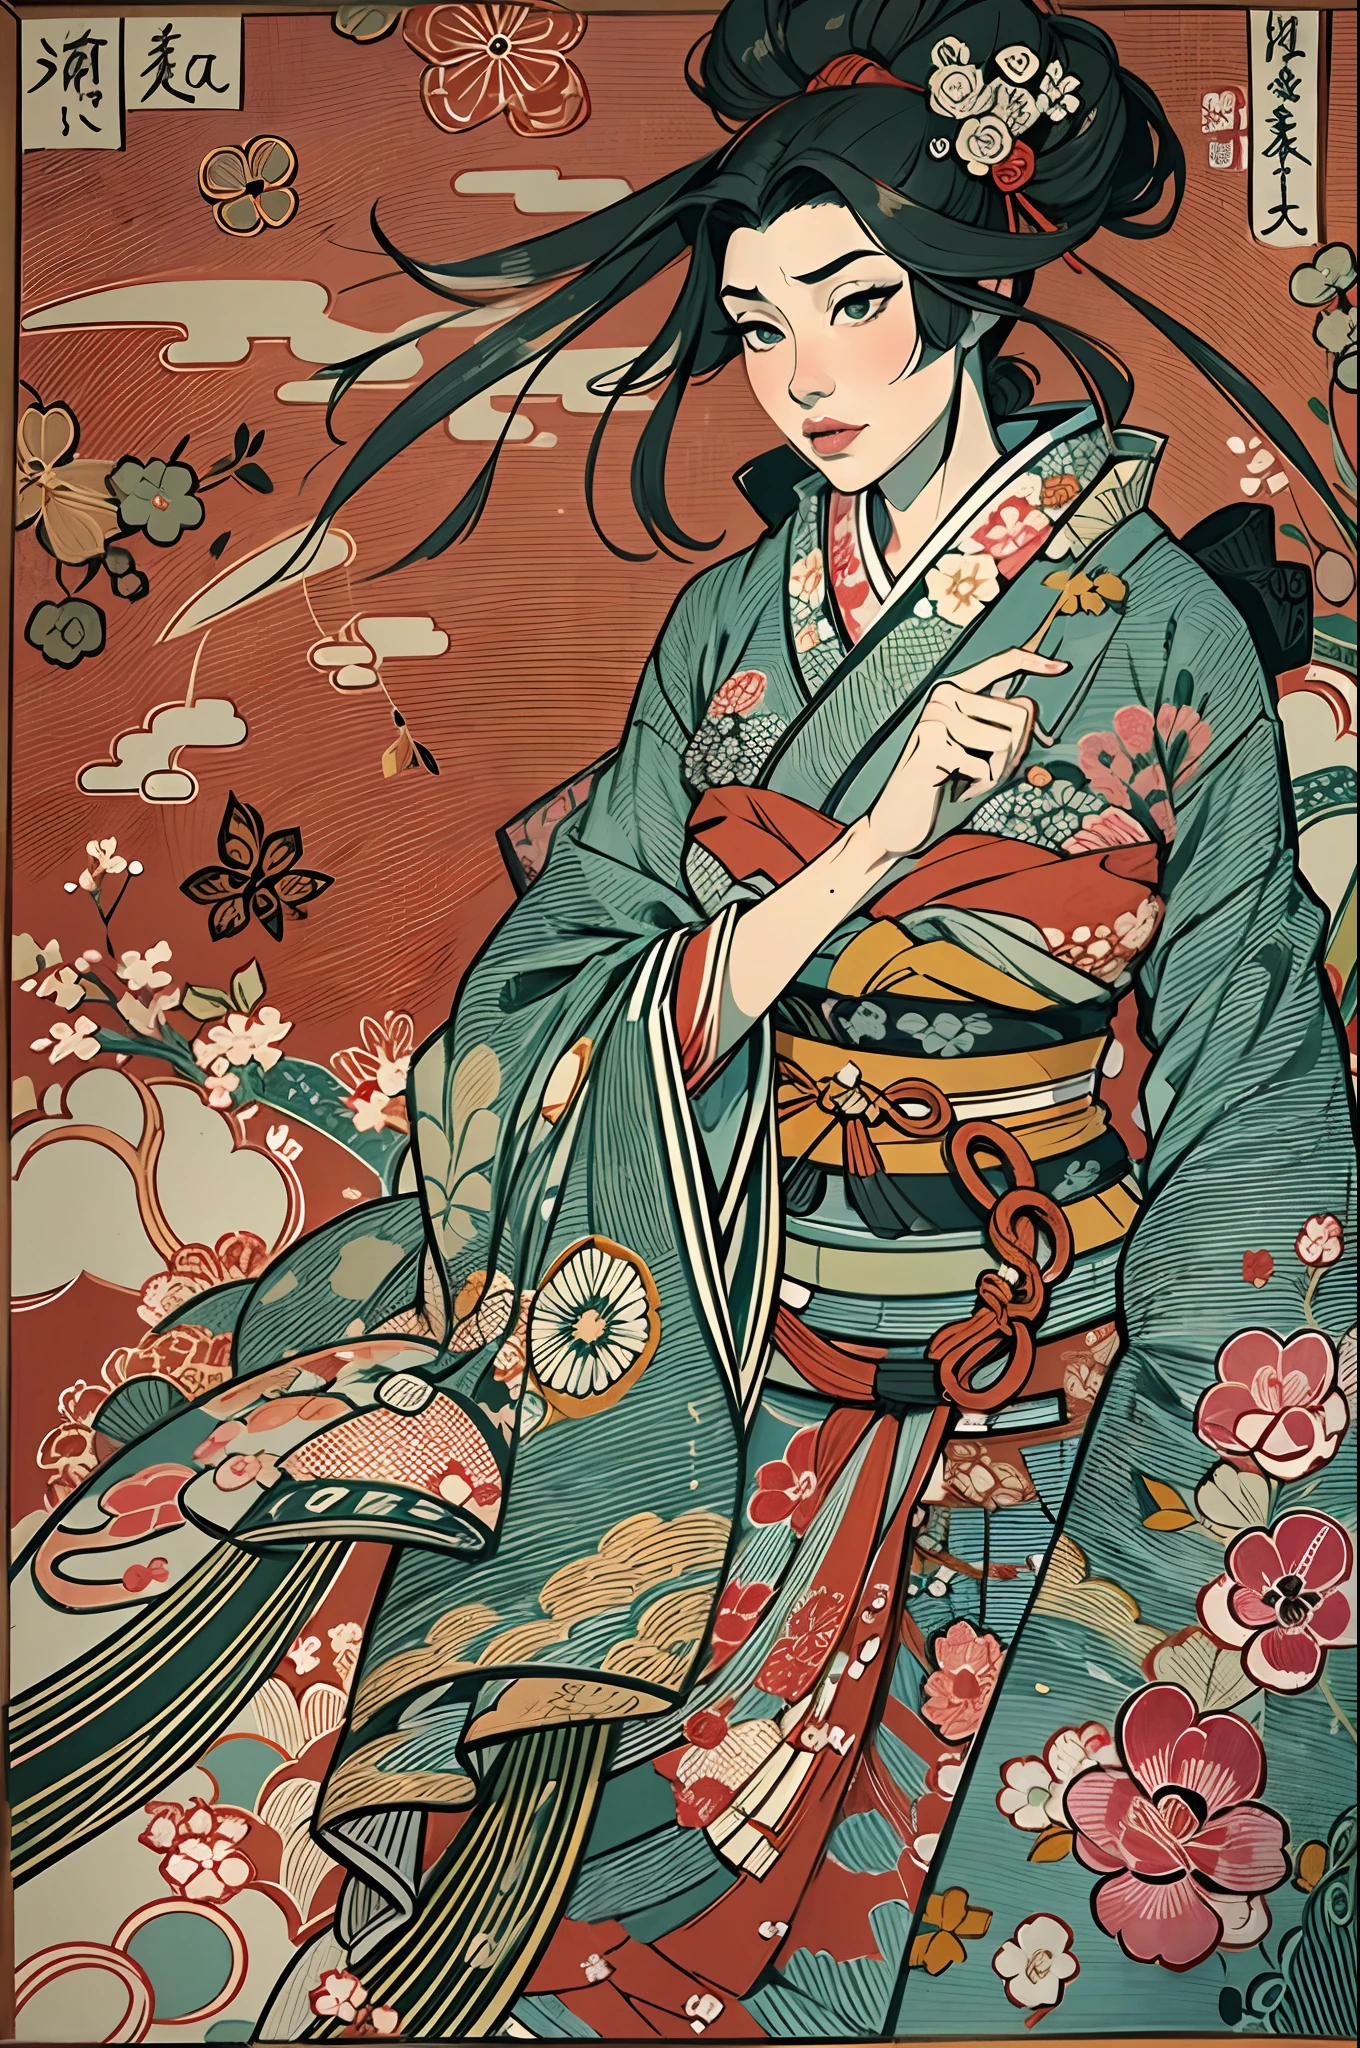 ((NSFW)),sharaku,retrato de una mujer,está centrado en el medio de la imagen, algunos efectos y adornos japoneses esparcidos por toda la foto